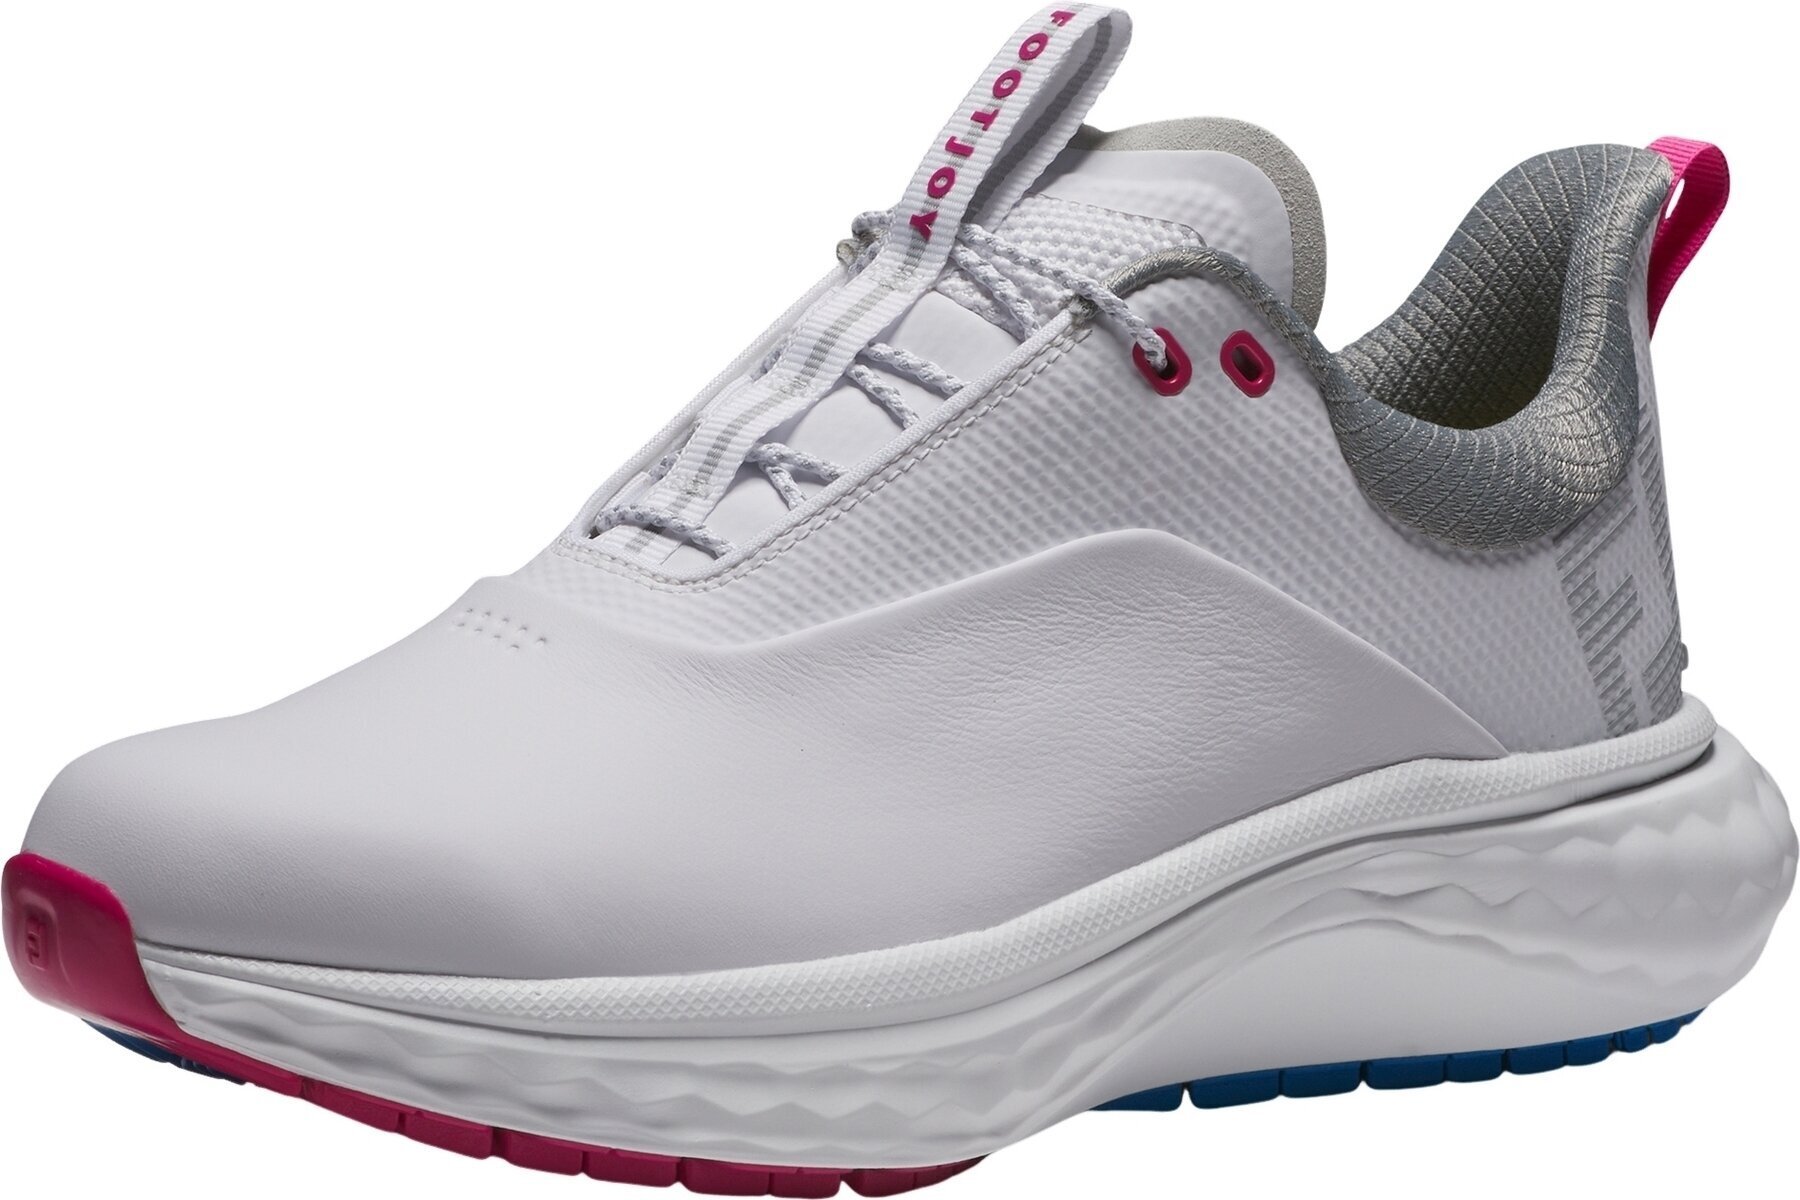 Chaussures de golf pour femmes Footjoy Quantum Womens Golf Shoes White/Blue/Pink 40,5